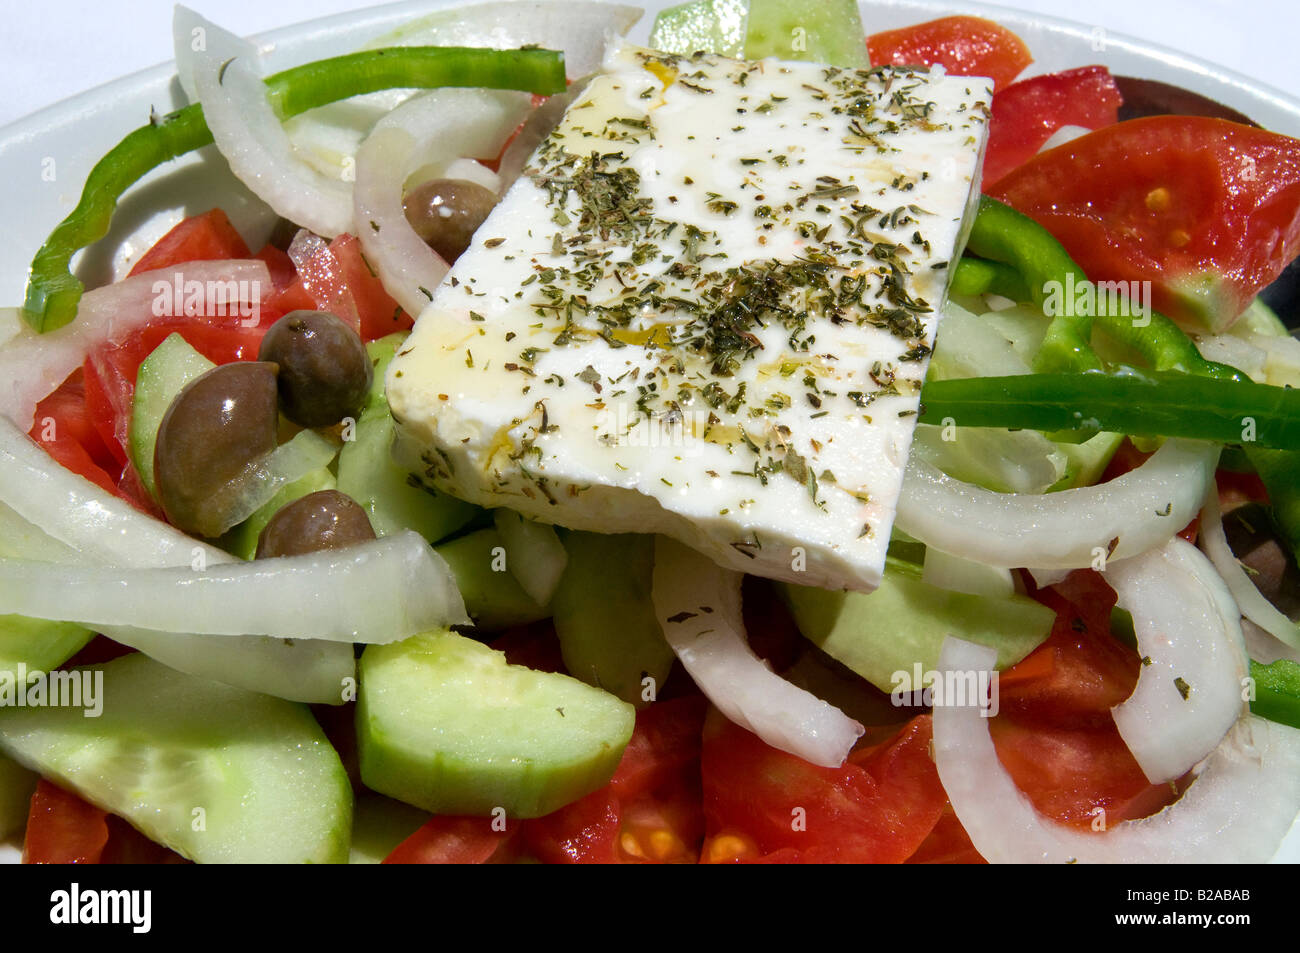 Salade grecque, Crète Grèce. Banque D'Images